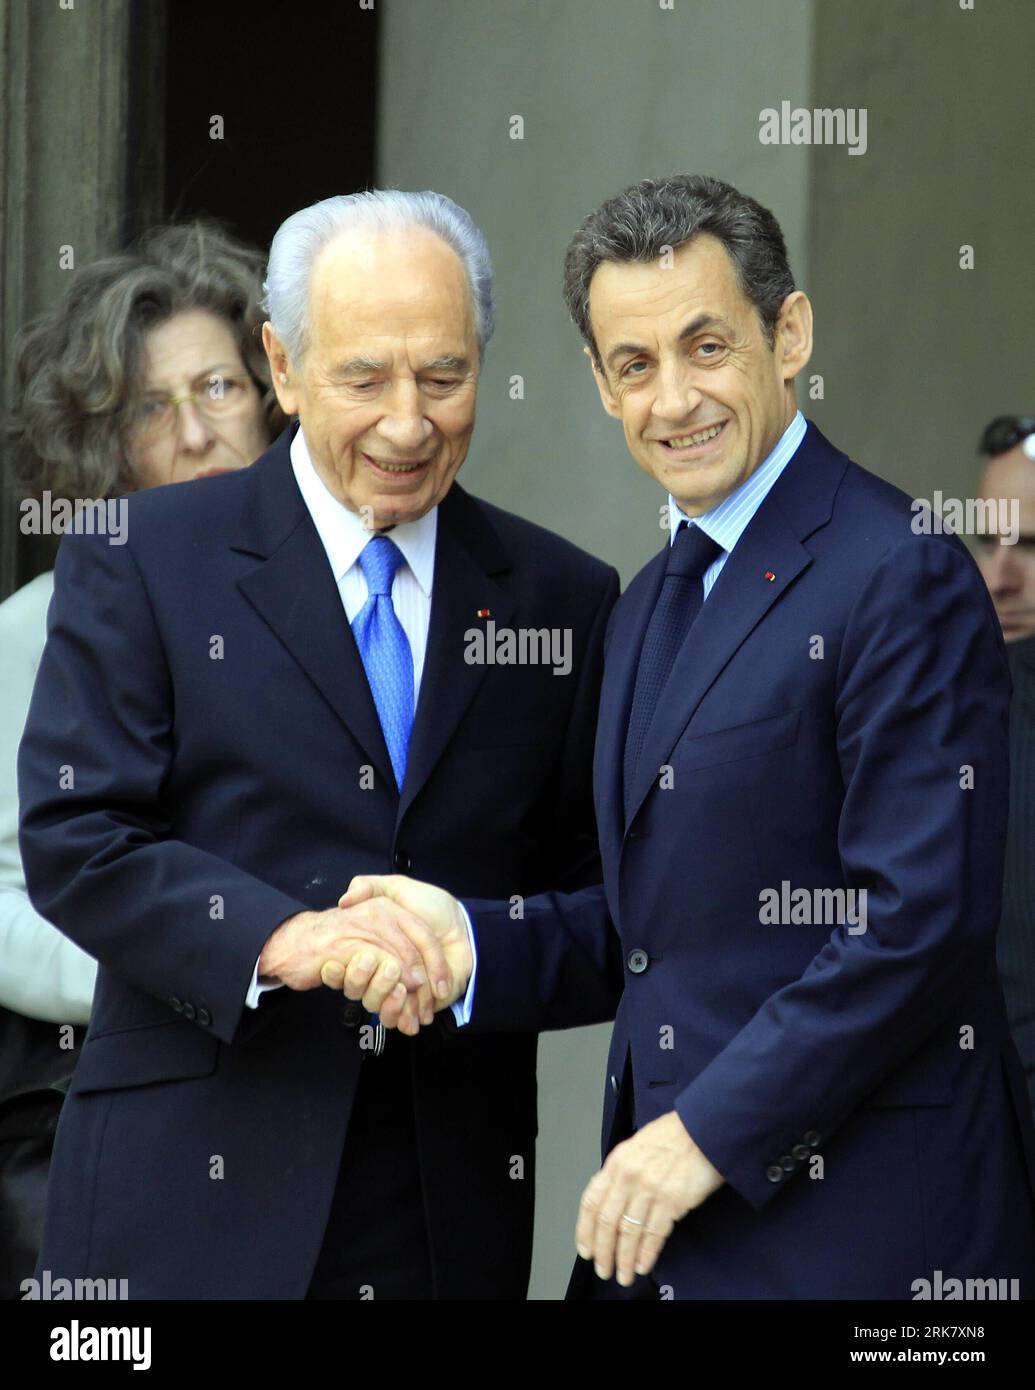 Bildnummer : 53944003 Datum : 15.04.2010 Copyright : imago/Xinhua (100415) -- PARIS, 15 avril 2010 (Xinhua) -- le président français Nicolas Sarkozy (à droite) serre la main du président israélien Shimon Peres en visite à l'Elysée, Paris, capitale de la France, le 15 avril 2010. (Xinhua/Zhang Yuwei) (hdt) (1)FRANCE-NICOLAS SARKOZY-ISRAEL-SHIMON PERES-MEETING PUBLICATIONxNOTxINxCHN premiumd xint People Politik Kbdig xdp 2010 hoch Bildnummer 53944003 Date 15 04 2010 Copyright Imago XINHUA Paris avril 15 2010 le président français XINHUA Nicolas Sarkozy serre la main du président israélien Shimon en visite Banque D'Images